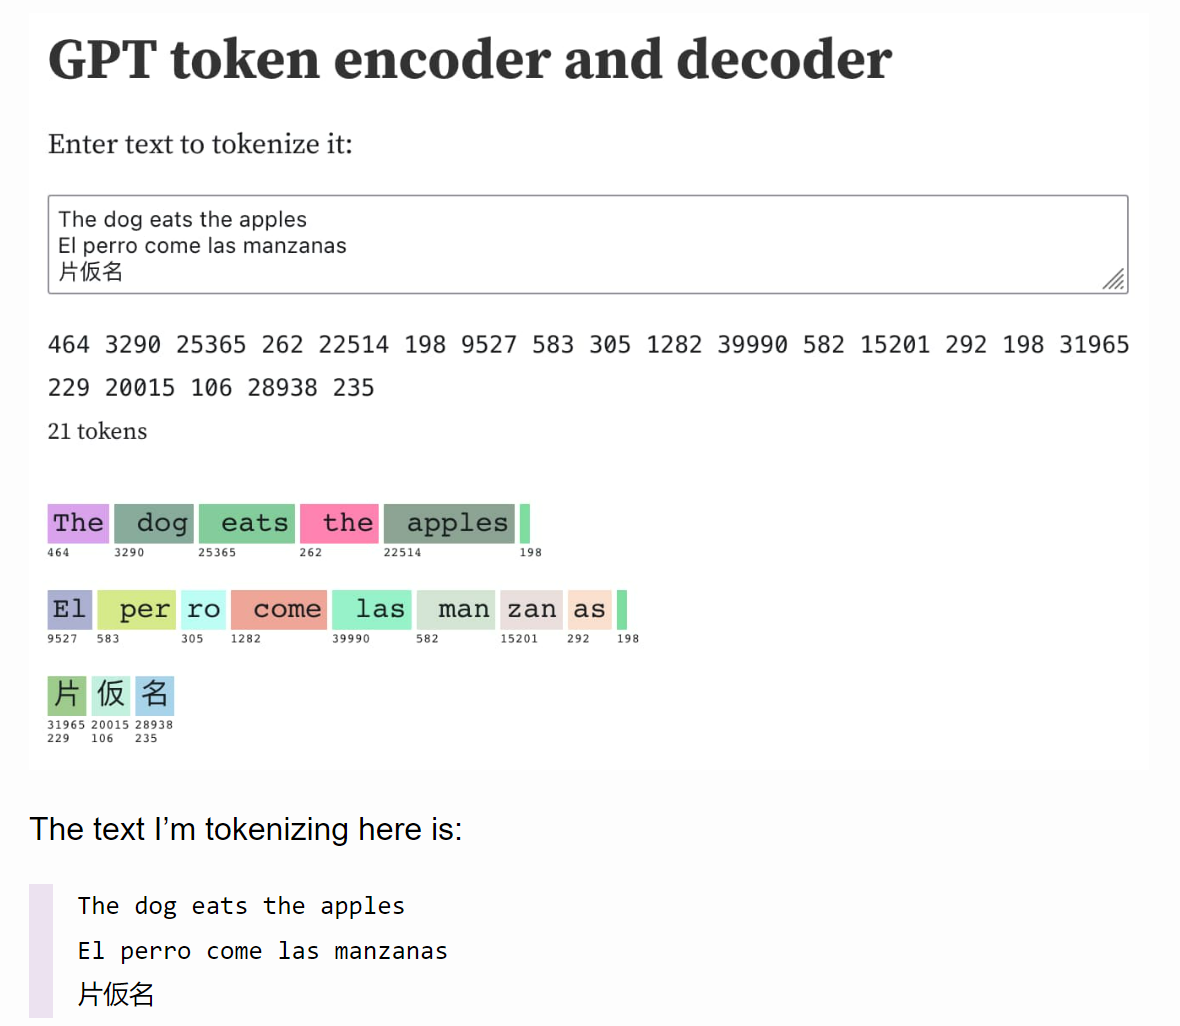 Token encoder and decoder